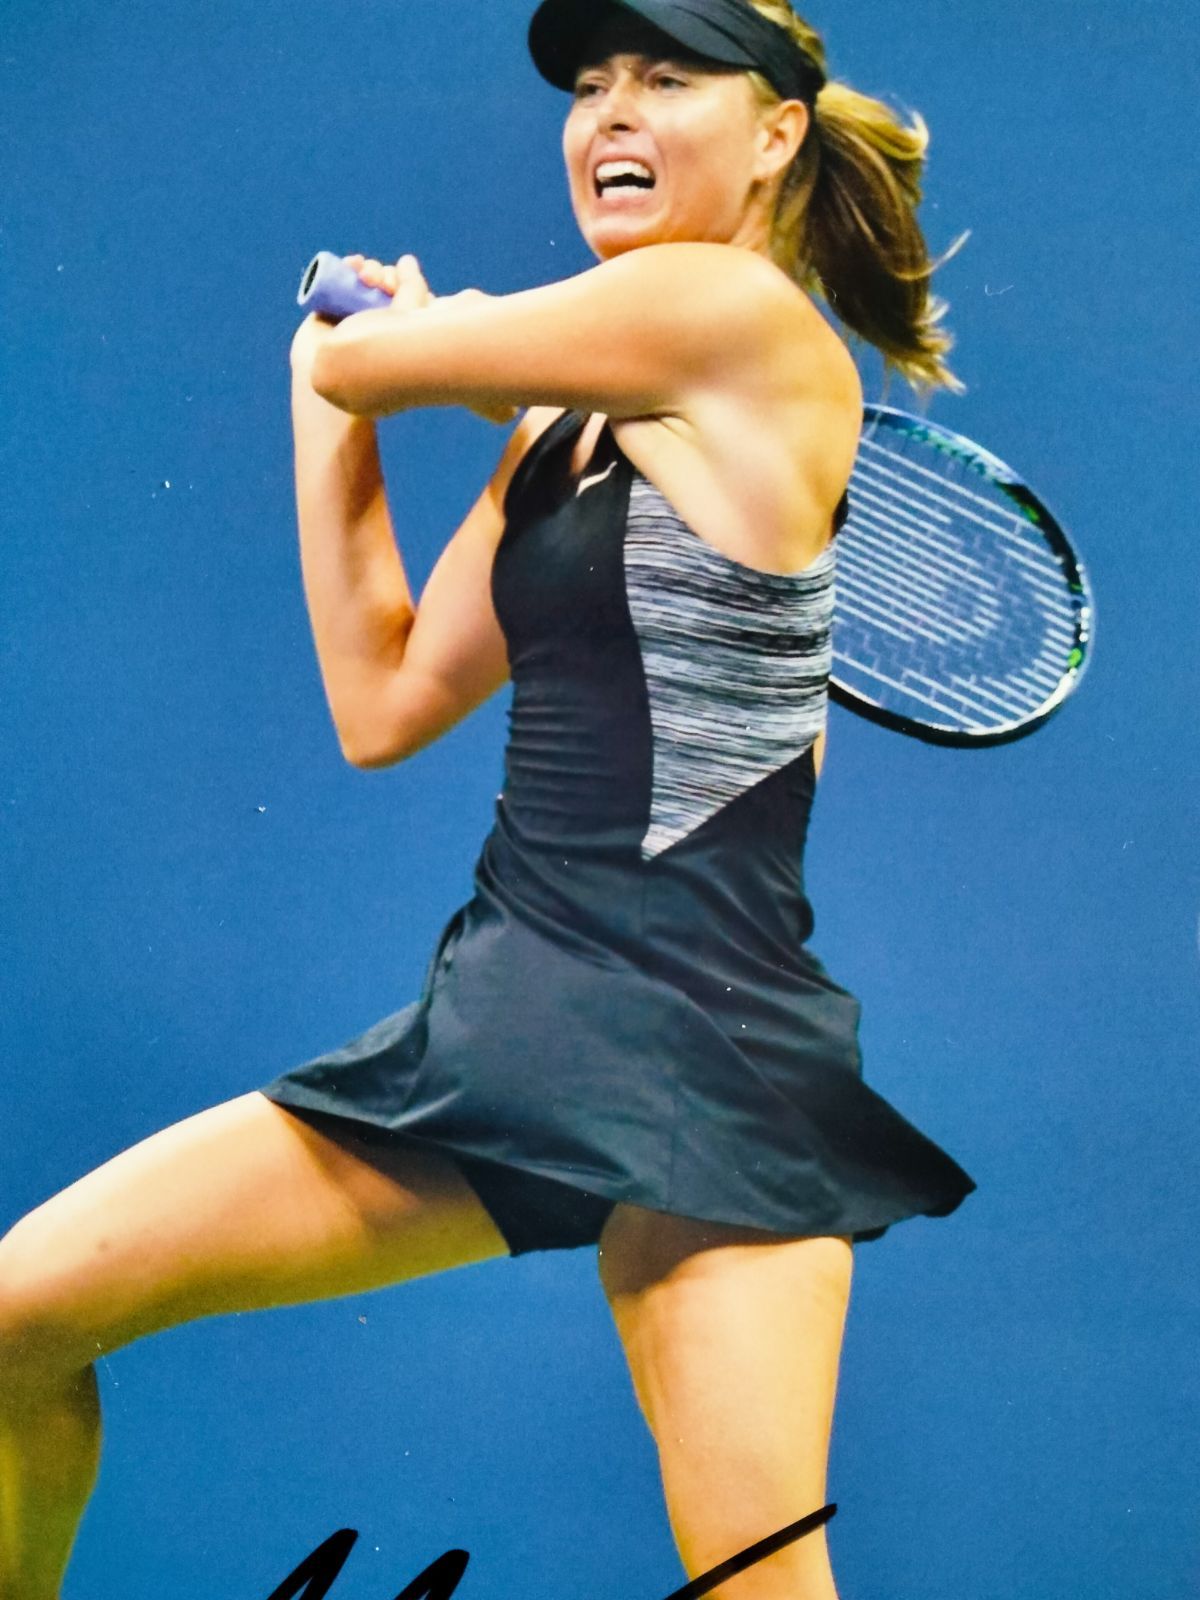 マリア・シャラポア直筆サイン入り2Lサイズ写真…Maria Sharapova…生涯グランドスラム達成…